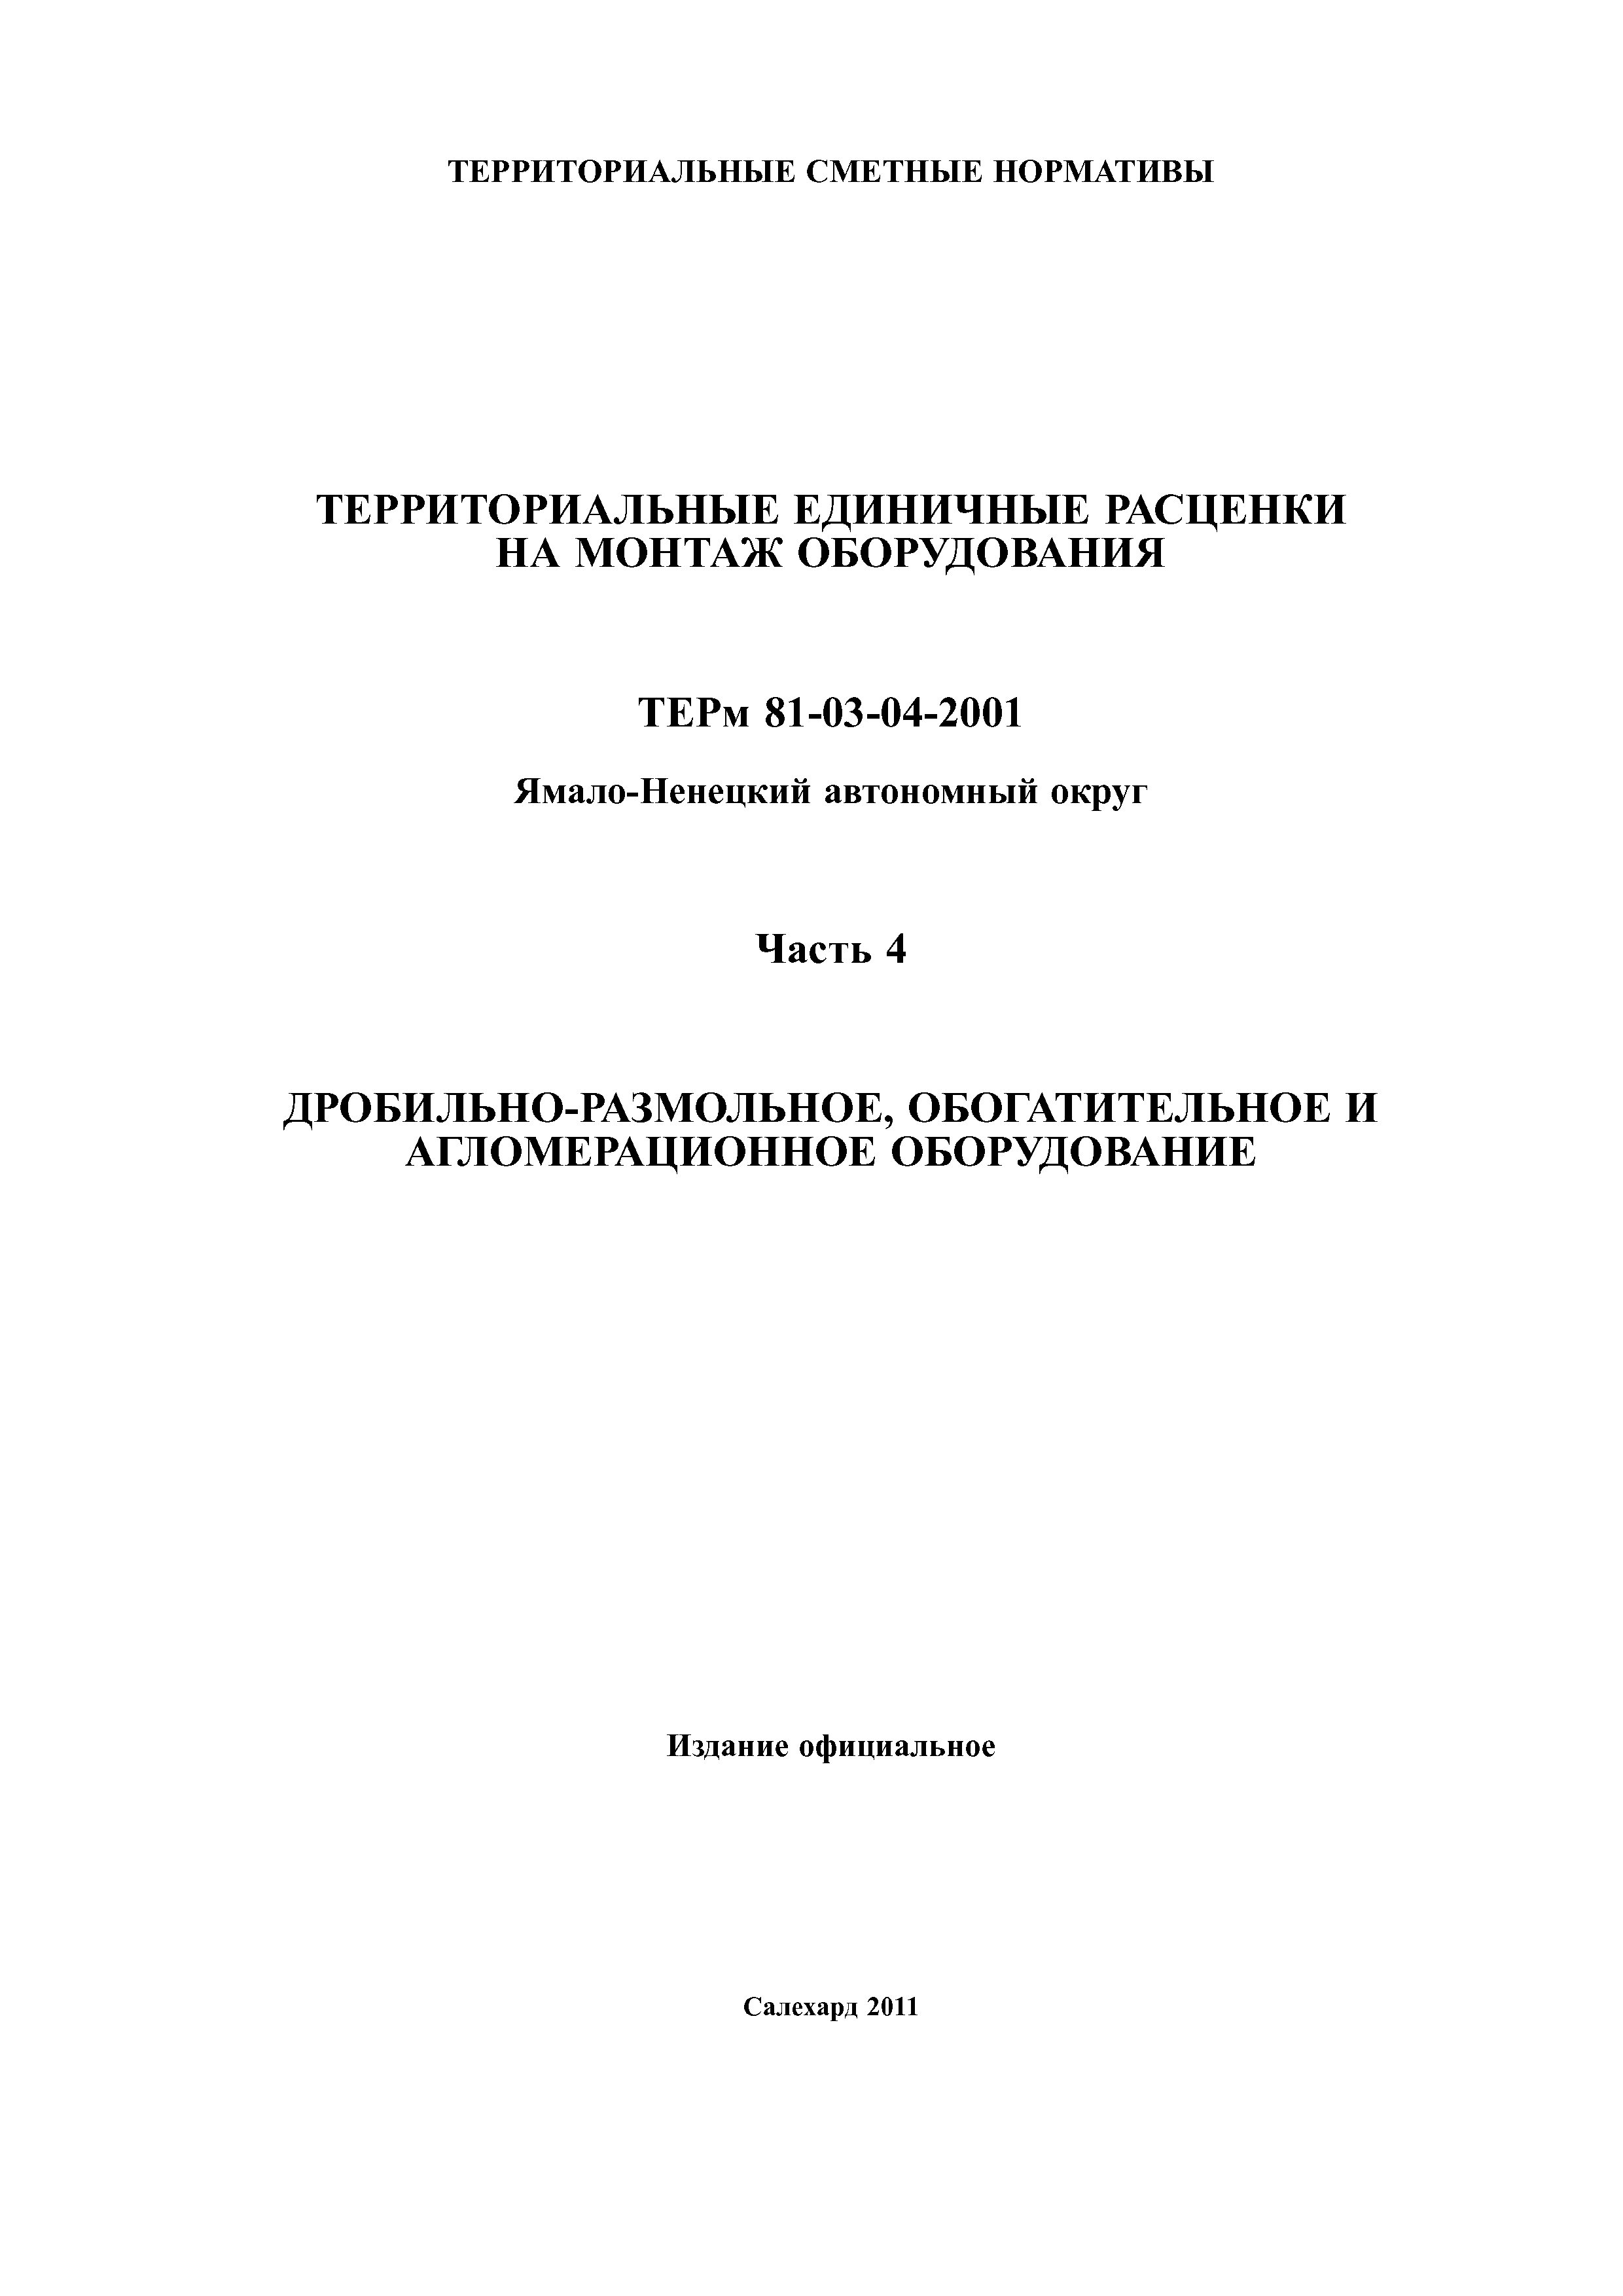 ТЕРм Ямало-Ненецкий автономный округ 04-2001